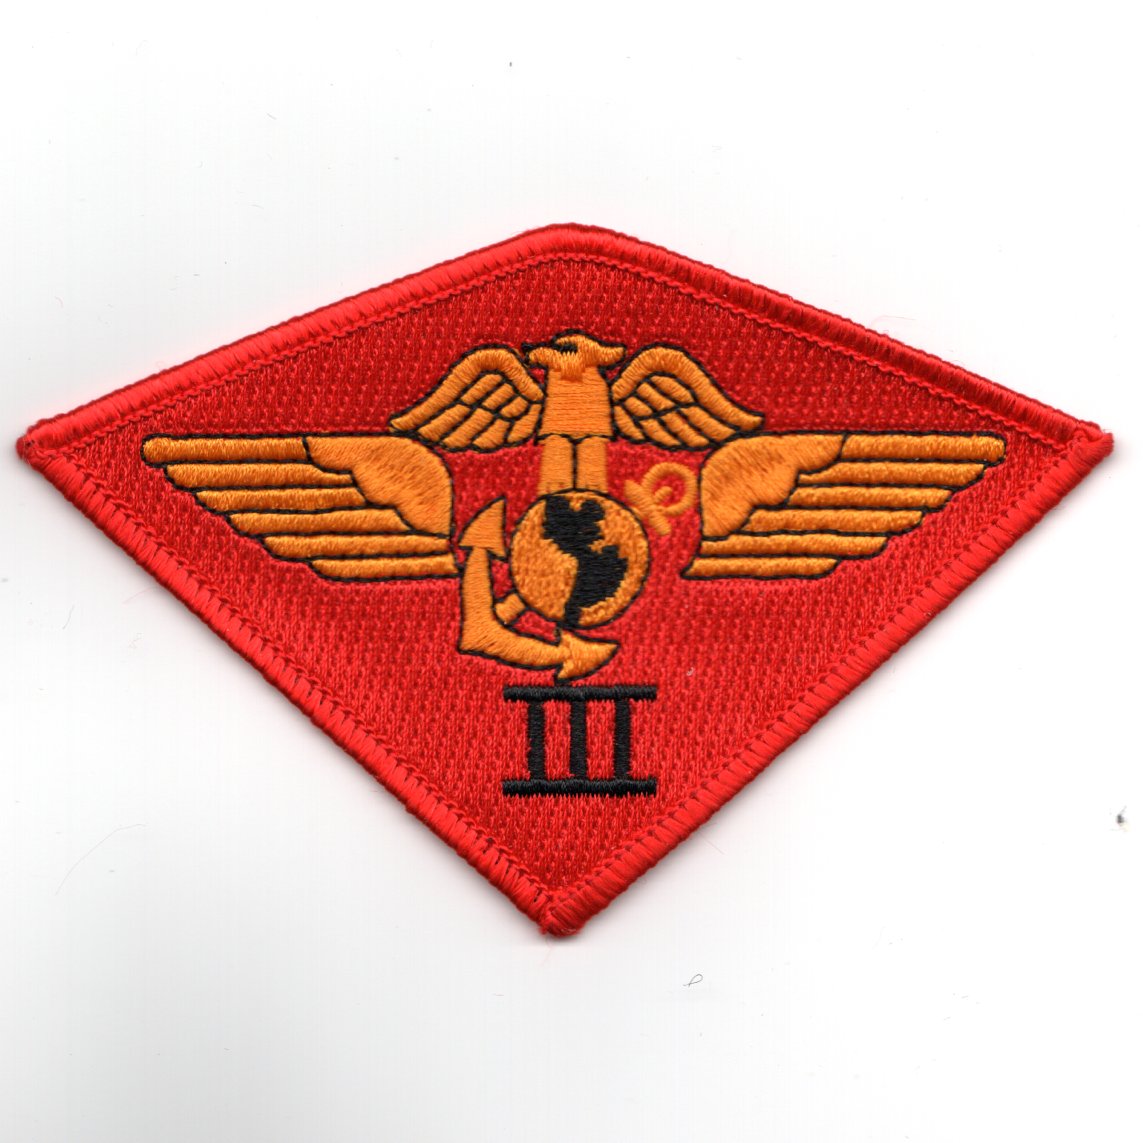 TOPGUN: 3rd Marine Wing Patch (Diamond)